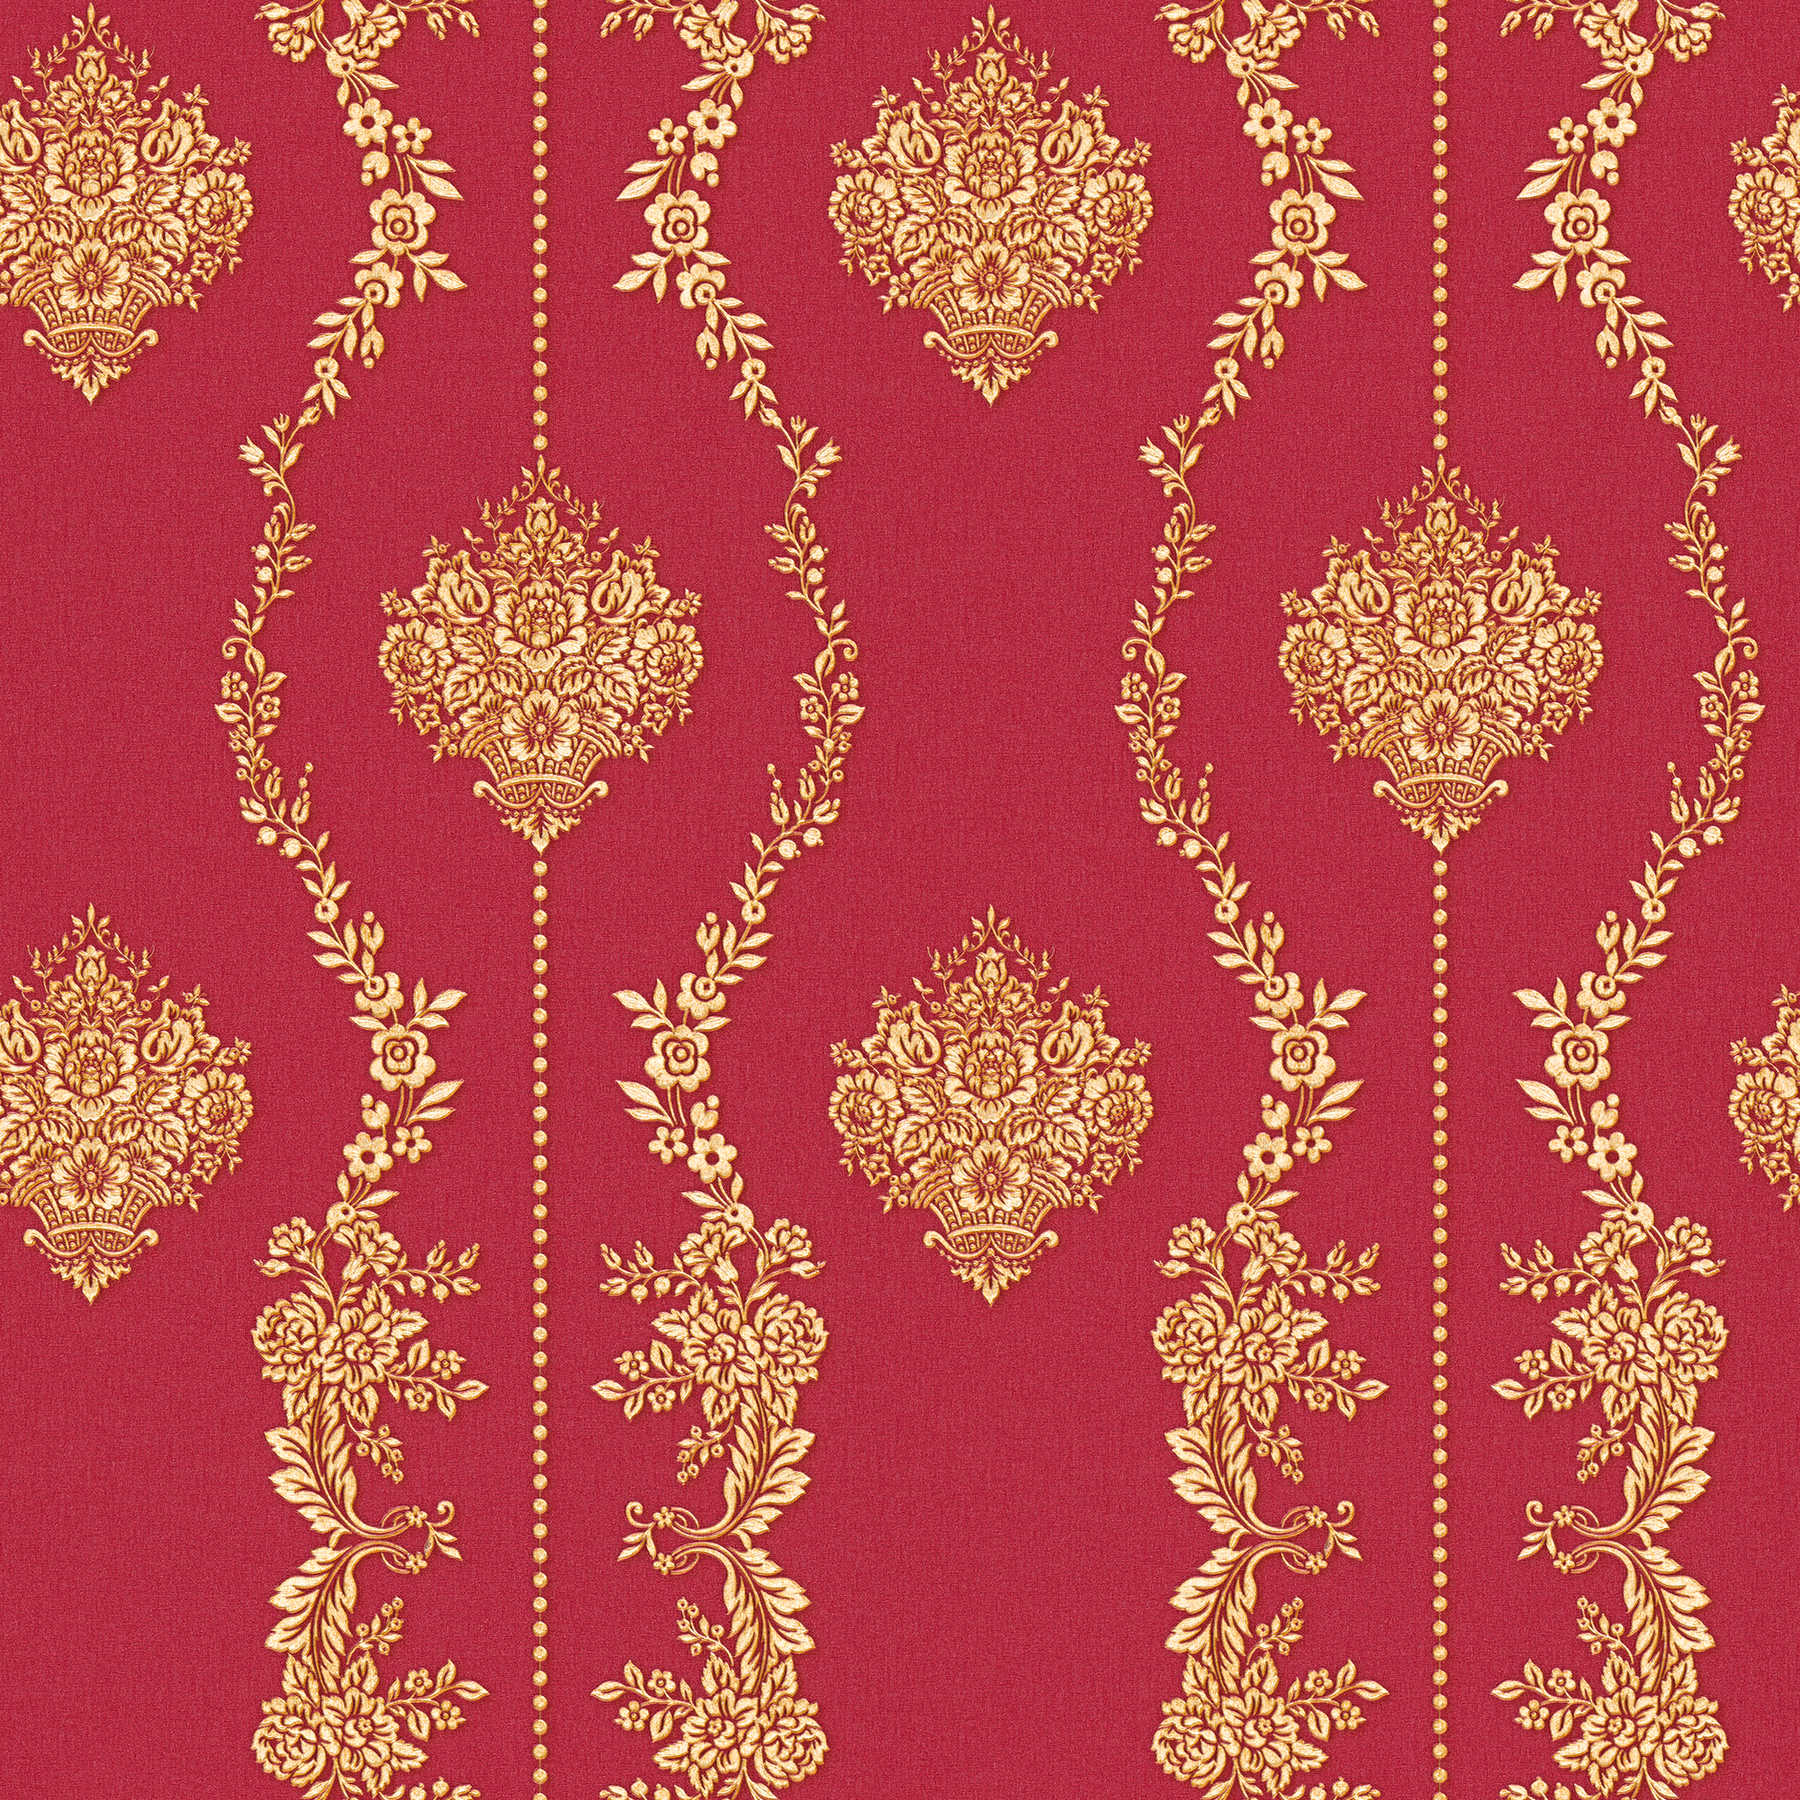 Papel pintado ornamental clásico con efecto dorado - metálico, rojo
